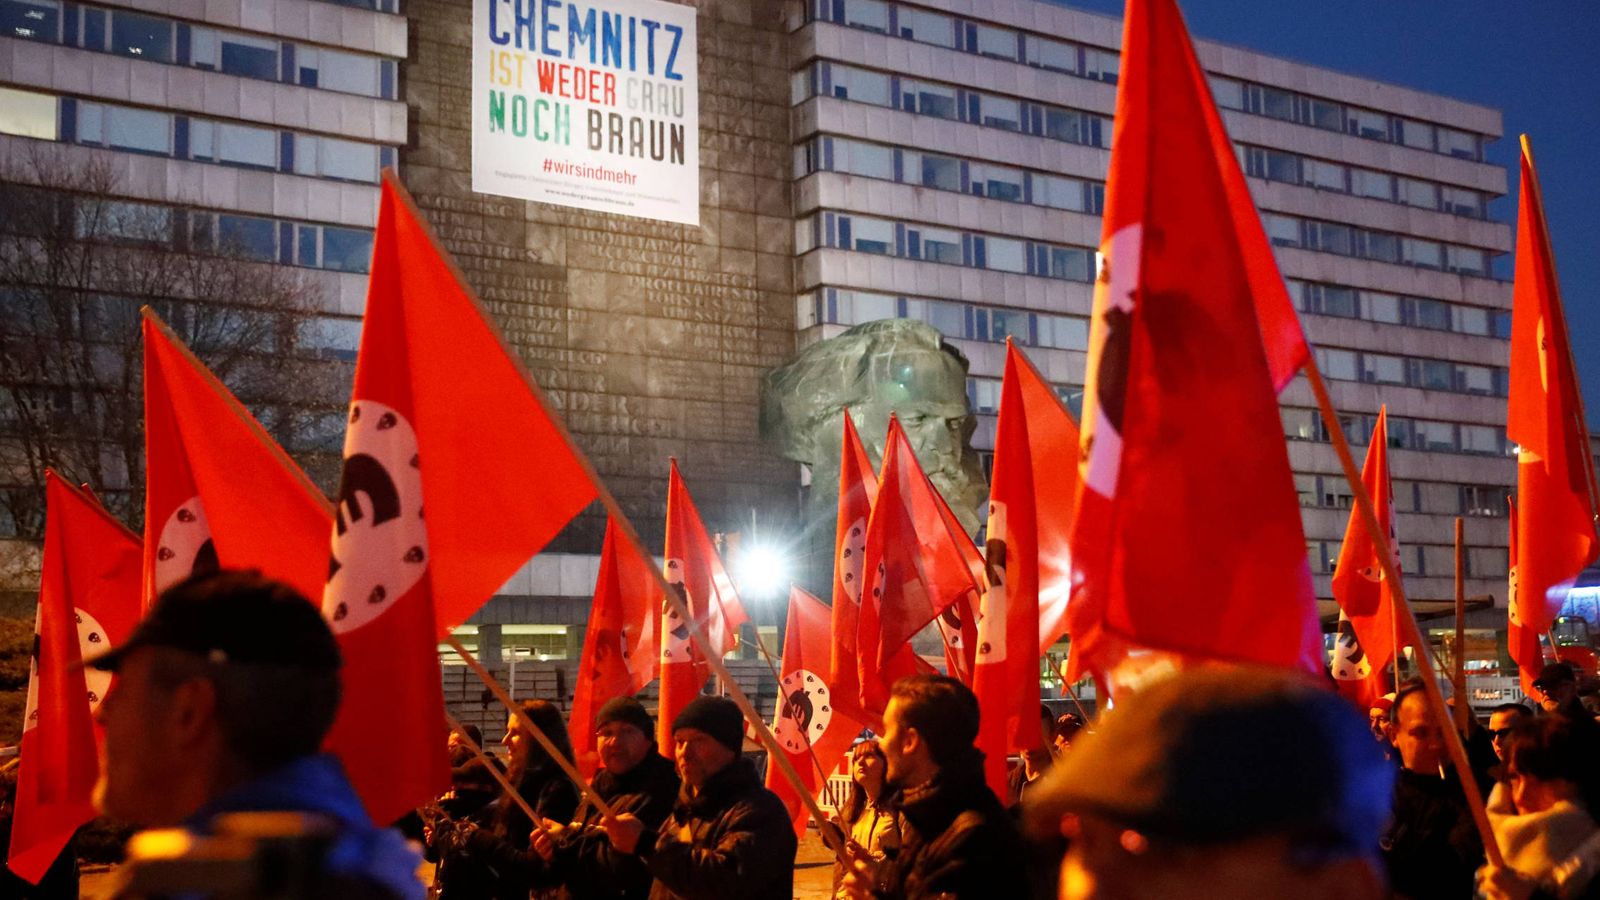 Foto: Manifestantes protestan durante la visita de la canciller Angela Merkel a Chemnitz. (Reuters)